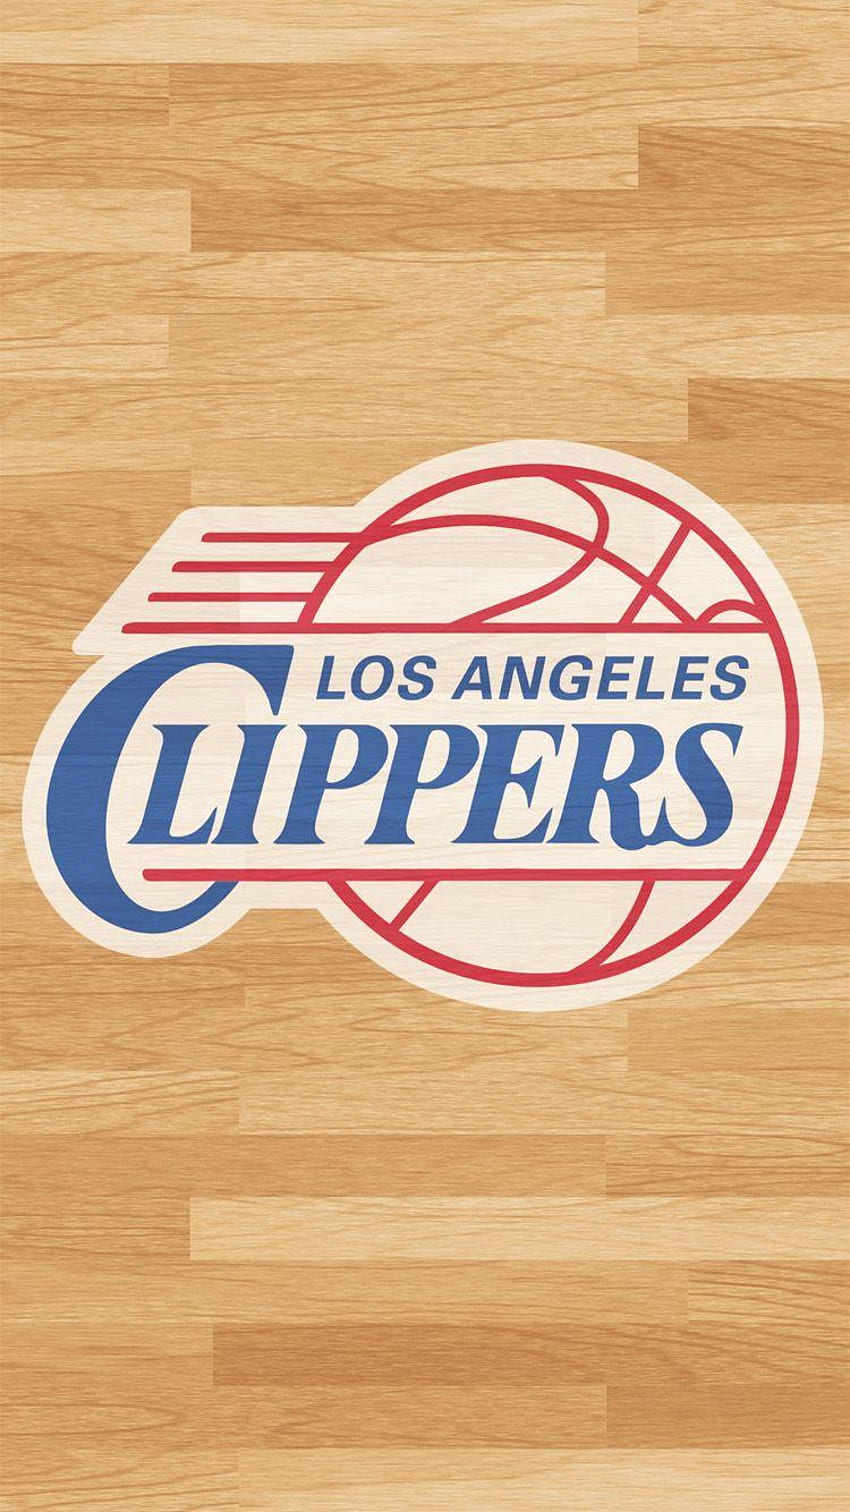 Clippers de Los Ángeles fondo de pantalla del teléfono